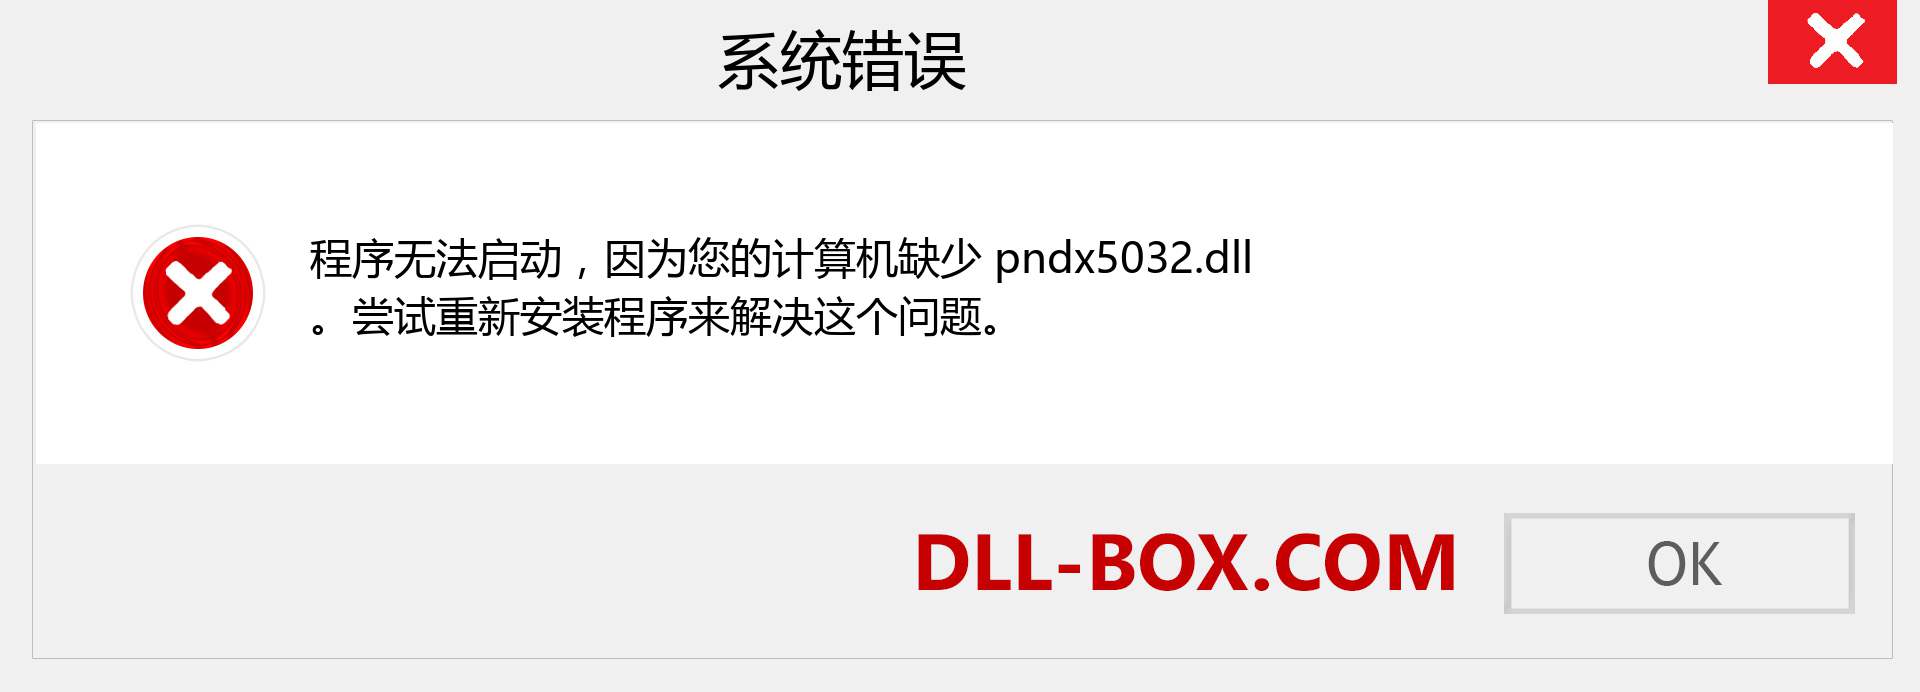 pndx5032.dll 文件丢失？。 适用于 Windows 7、8、10 的下载 - 修复 Windows、照片、图像上的 pndx5032 dll 丢失错误